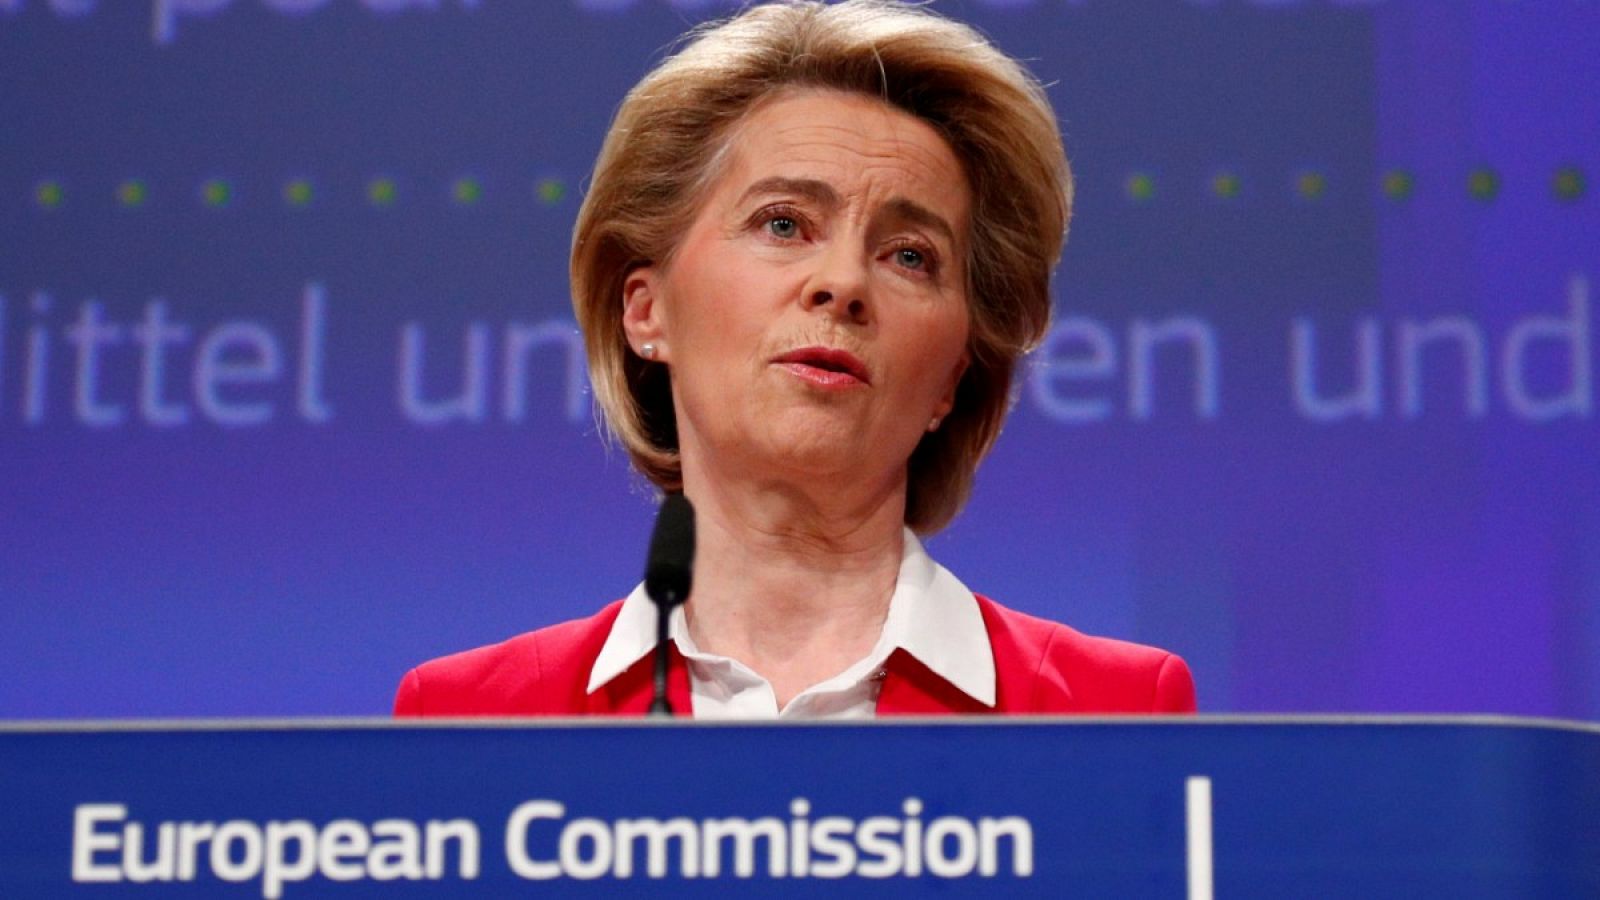 La presidenta de la Comisión Europea, Ursula von der Leyen, en una imagen del 2 de abril de 2020 en Bruselas, Bélgica.